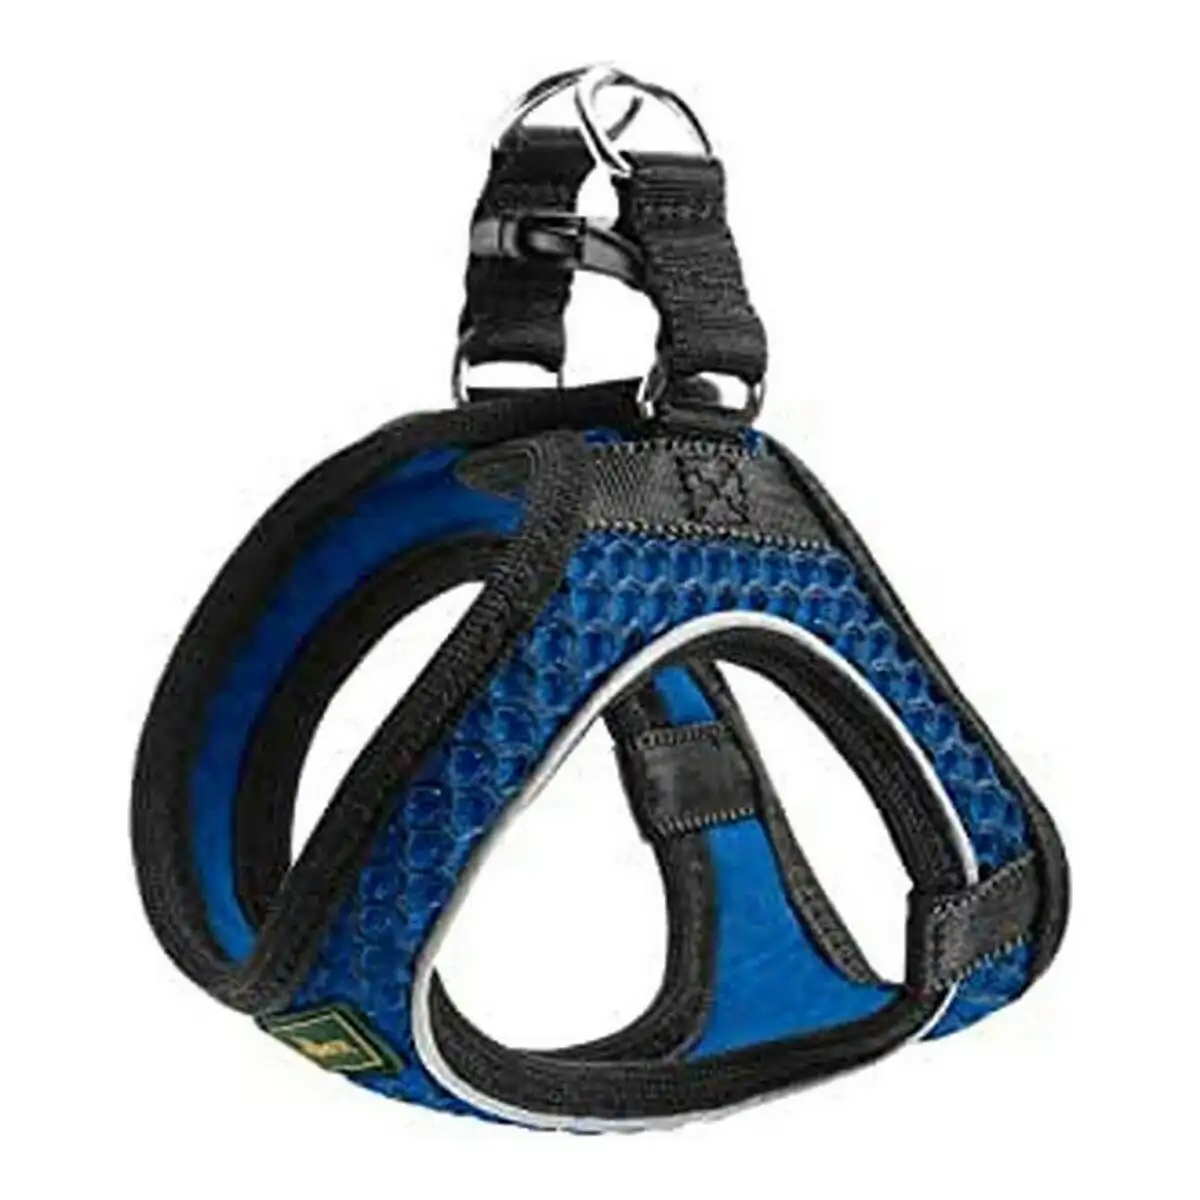 Harnais pour chien hunter hilo comfort bleu taille s m 48 55 cm _6471. DIAYTAR SENEGAL - L'Artisanat à Portée de Clic. Découvrez notre boutique en ligne pour trouver des produits uniques qui célèbrent la créativité et l'artisanat sénégalais.